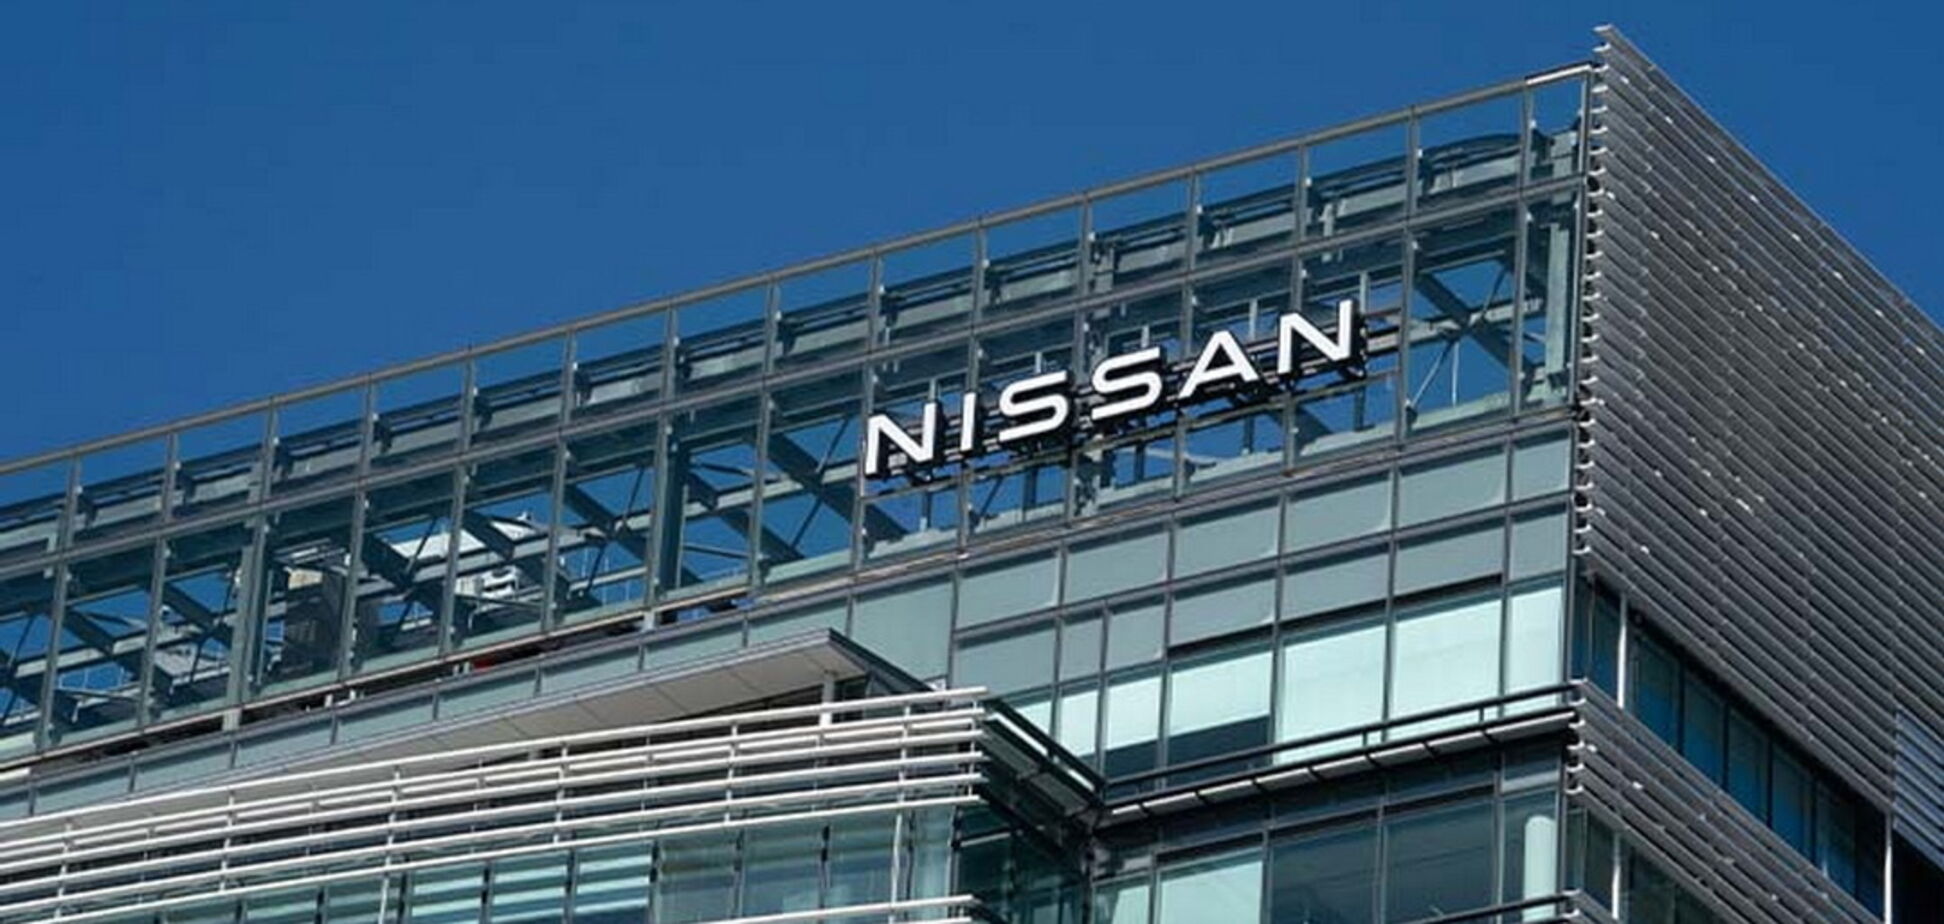 Nissan выделяет средства в поддержку украинского народа и останавливает экспорт автомобилей в россию